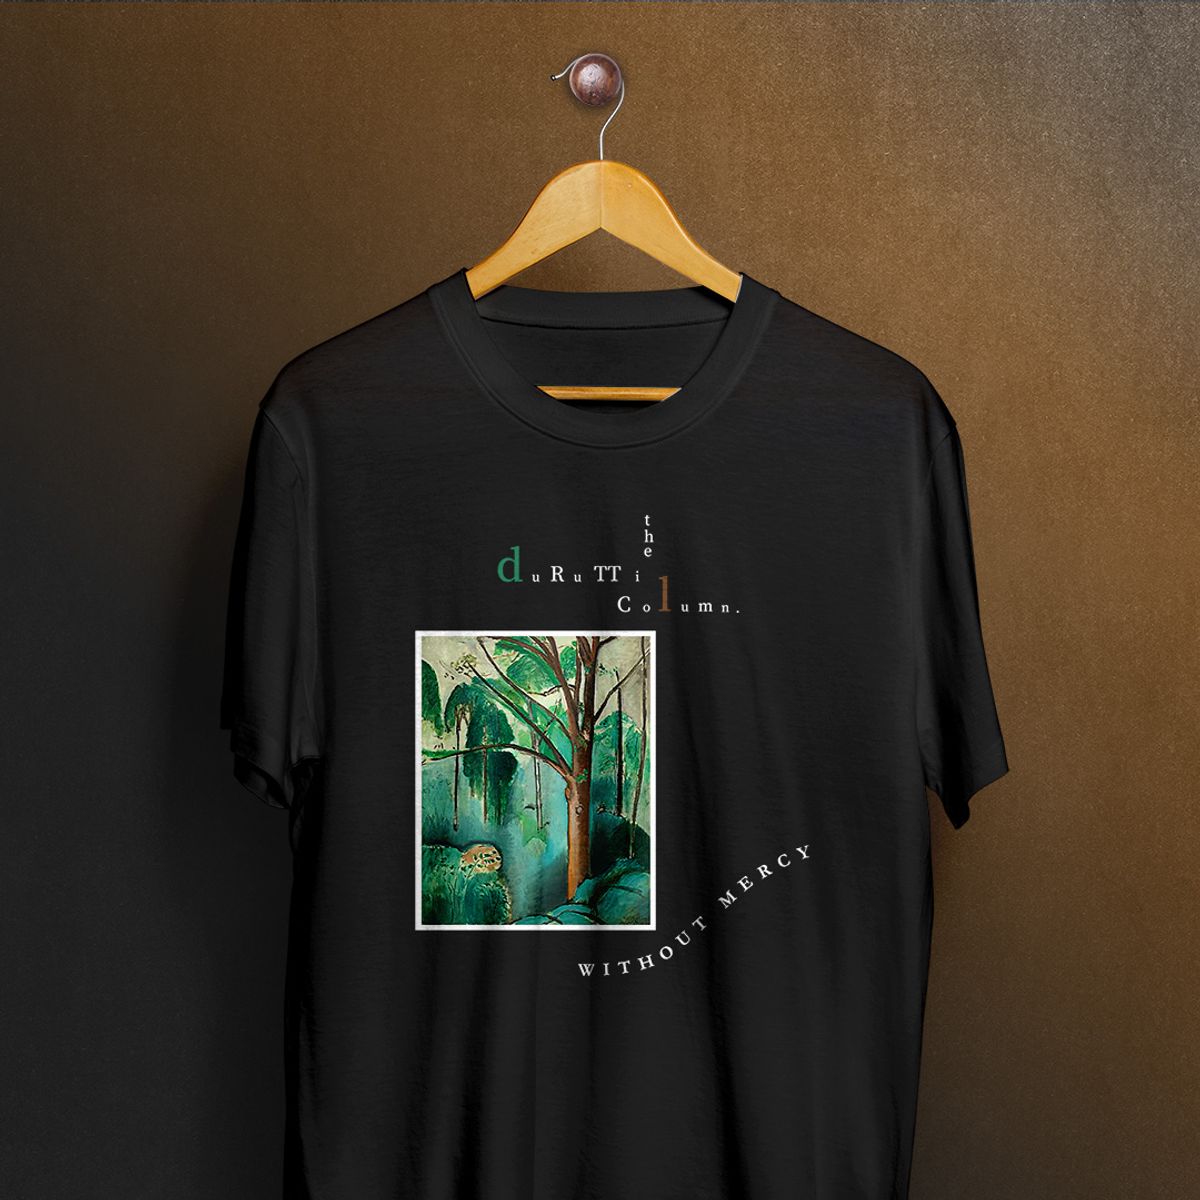 Nome do produto: Camiseta The Durutti Column - Without Mercy BR